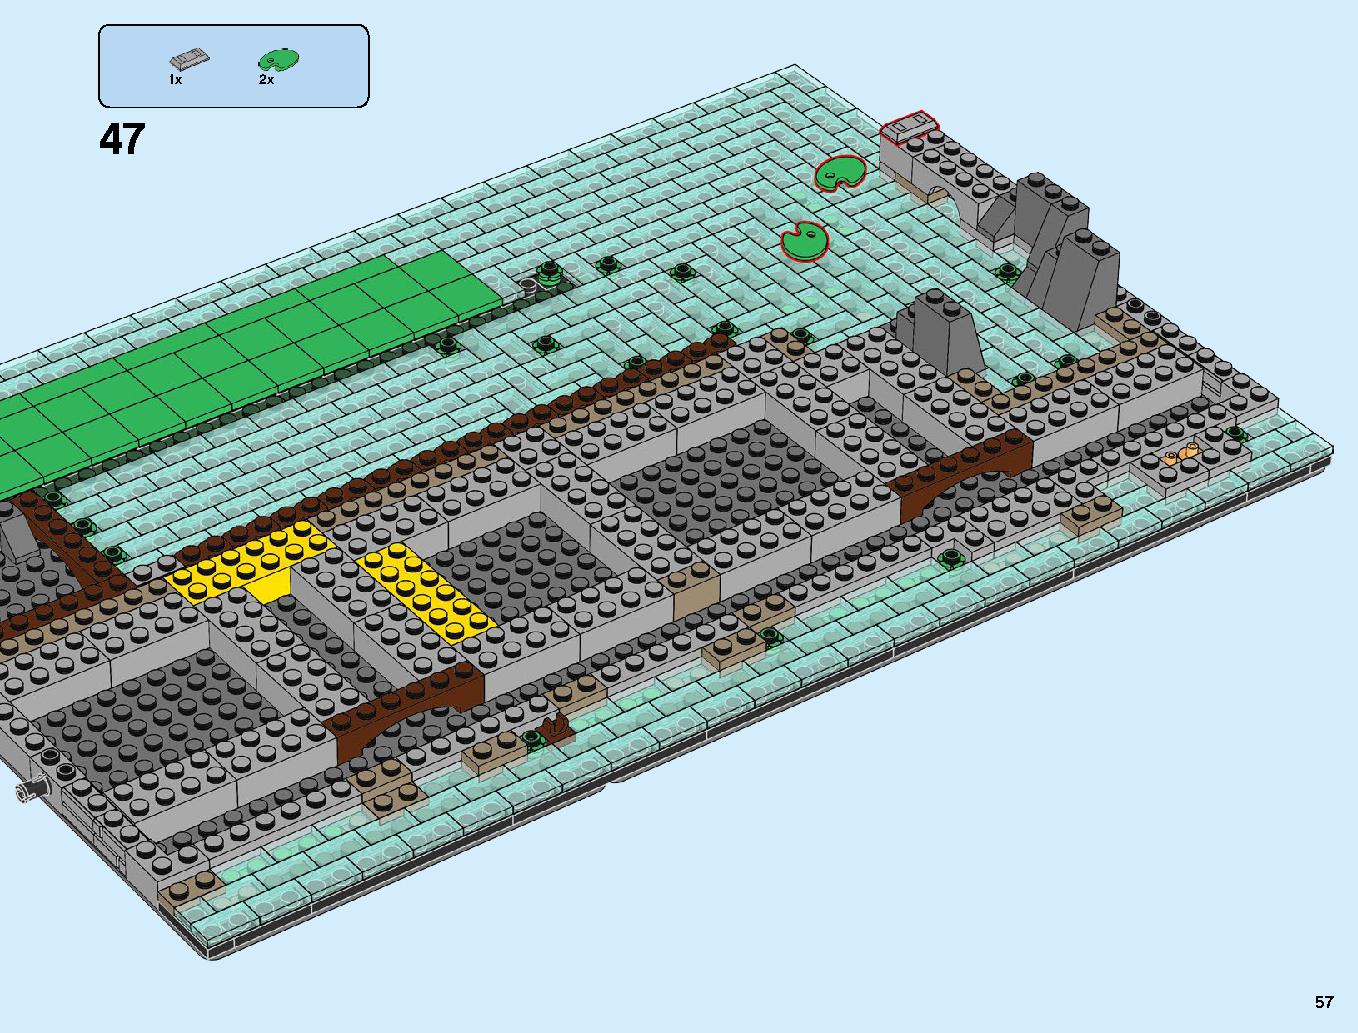 ニンジャゴーシティ・ポートパーク 70657 レゴの商品情報 レゴの説明書・組立方法 57 page